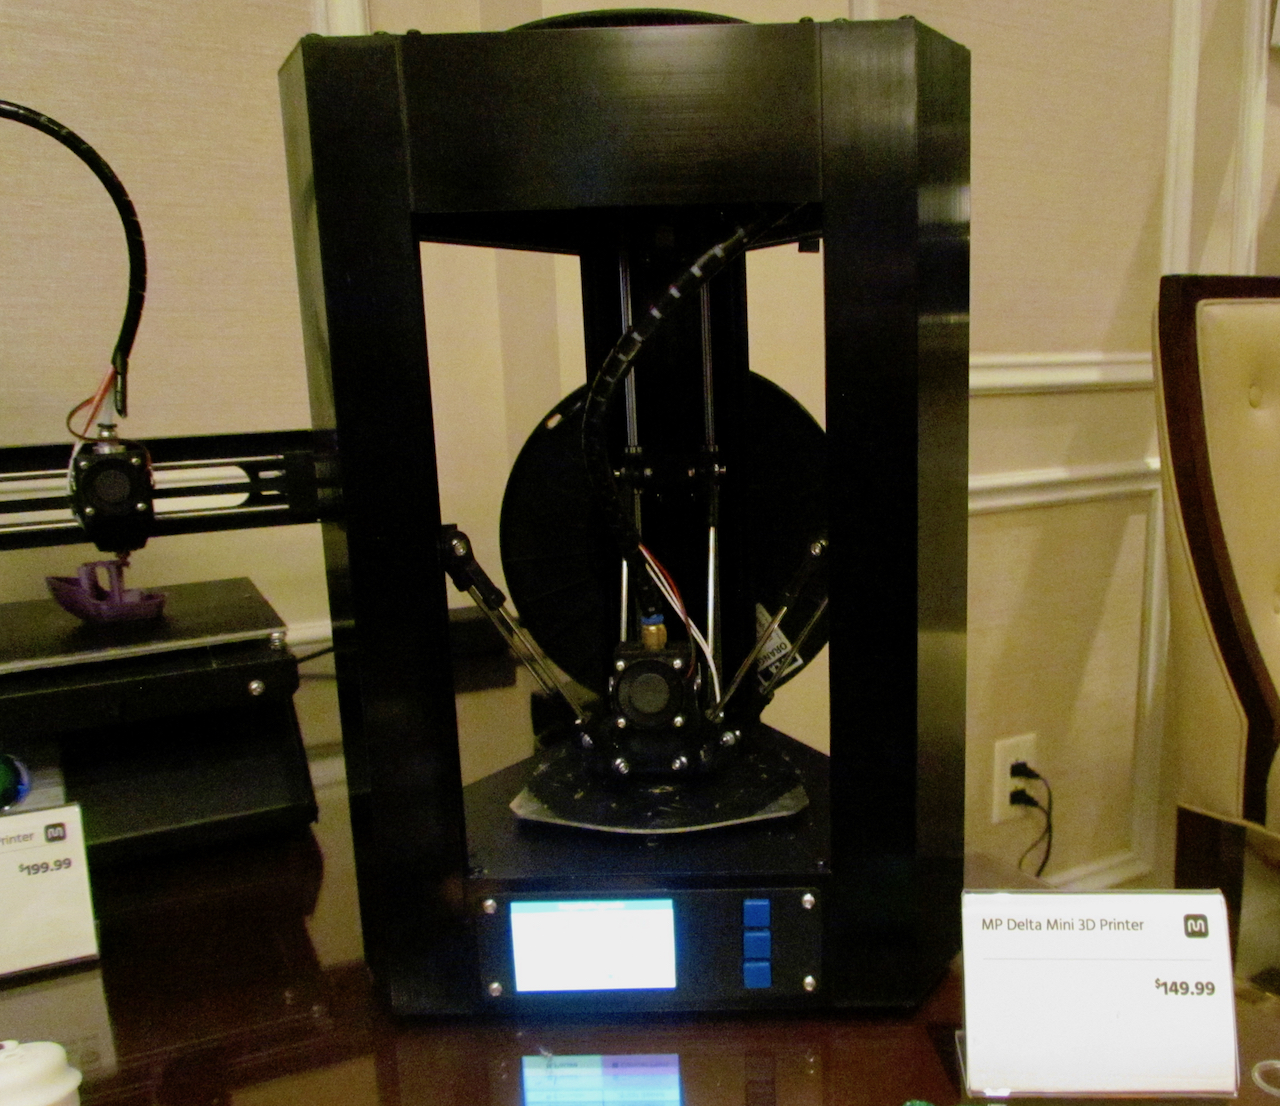  The all-new Monoprice Delta Mini desktop 3D printer 